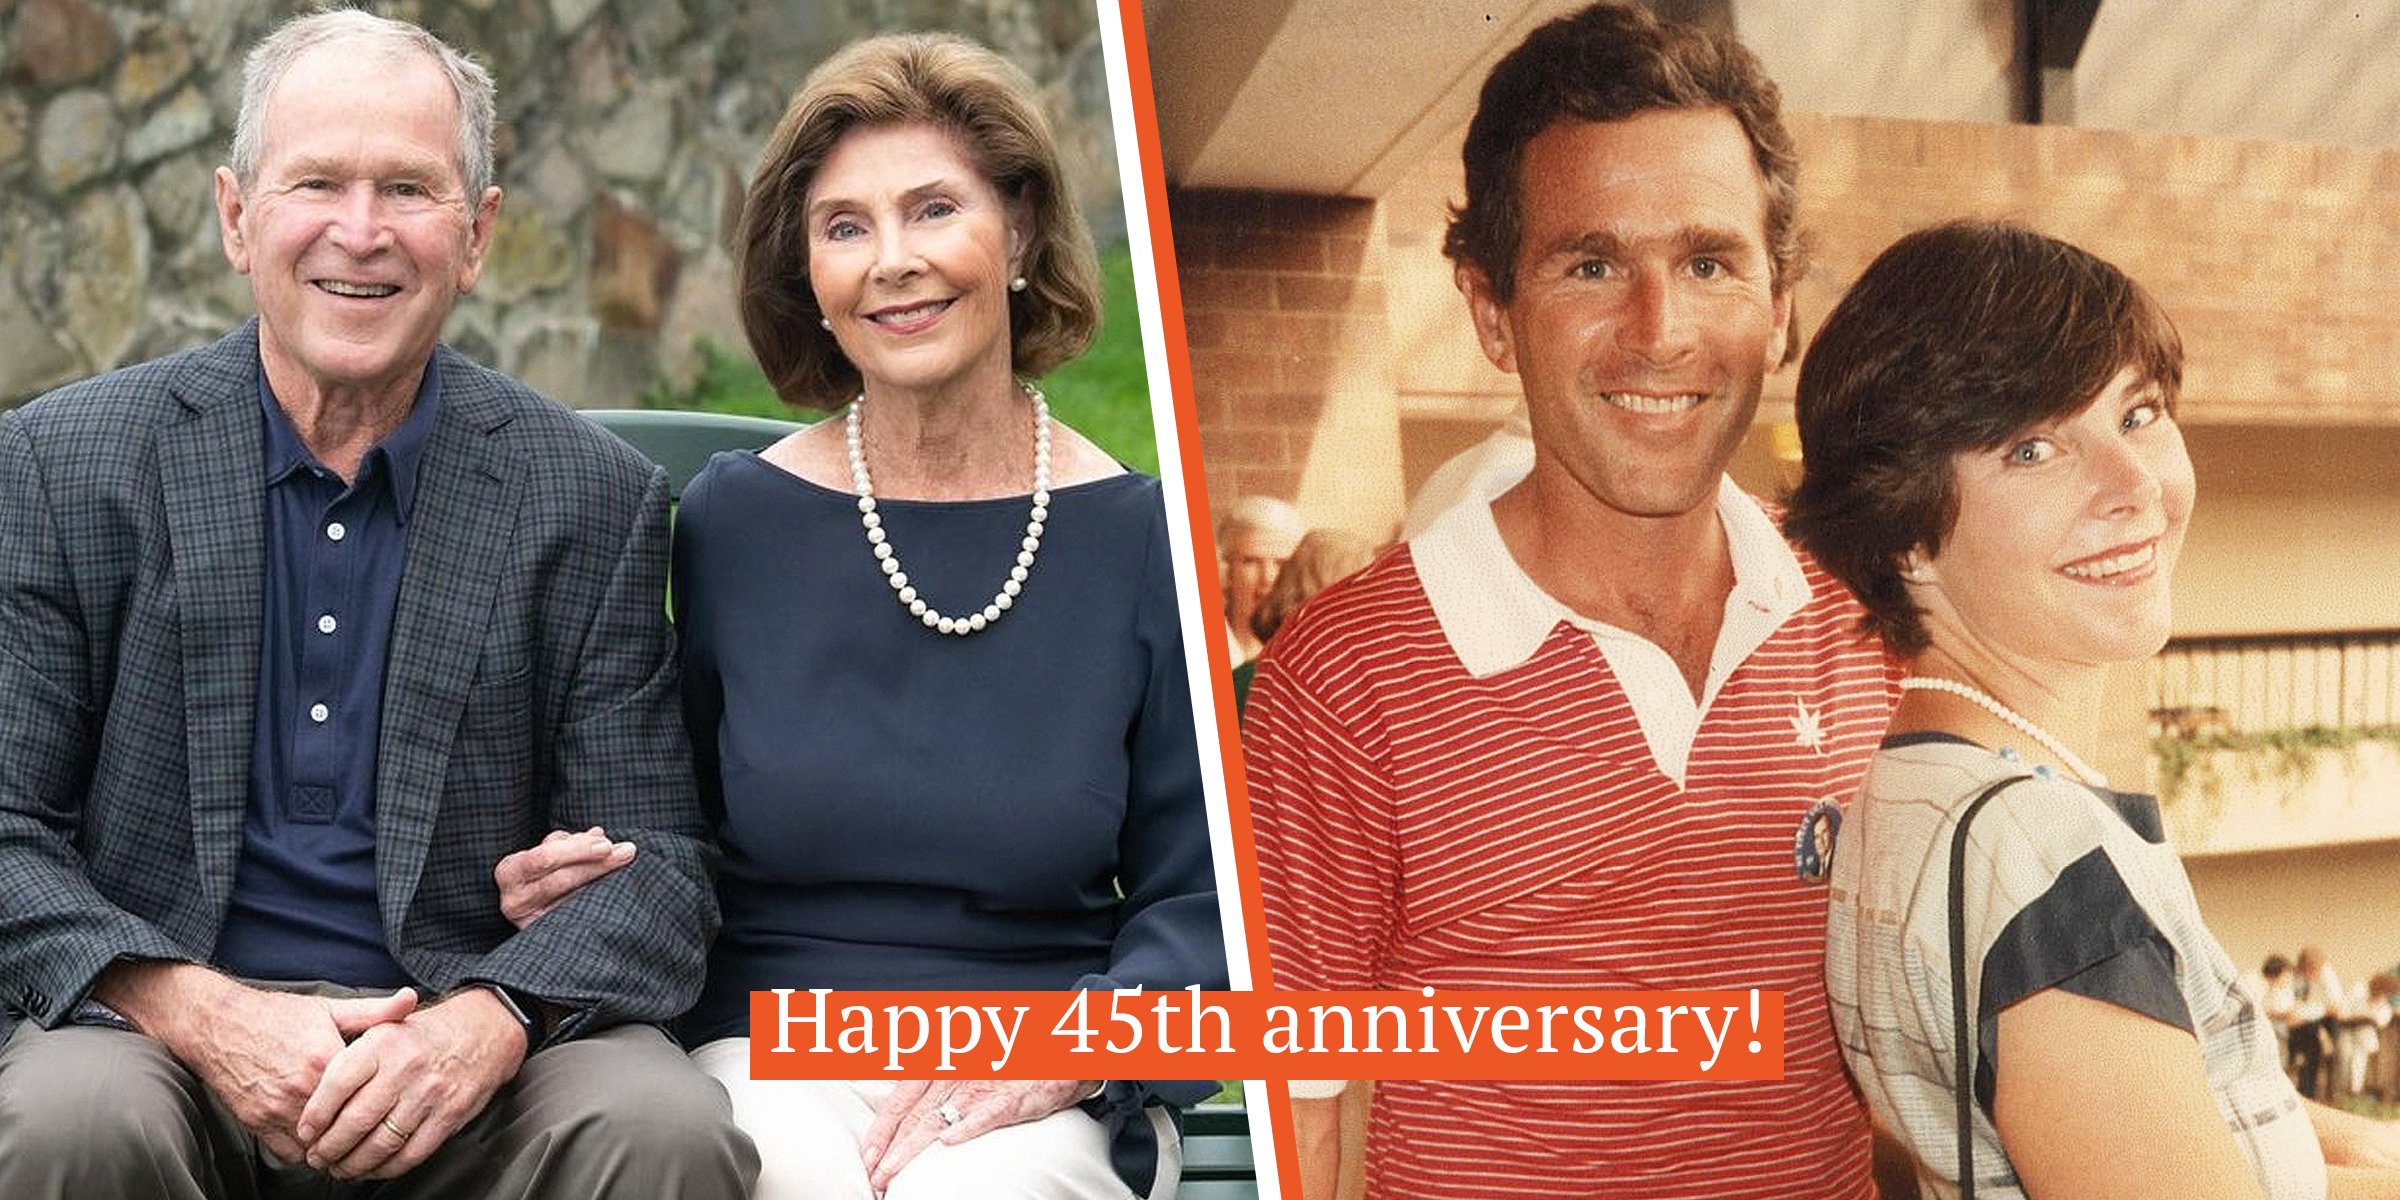 George W Laura Bush Celebrate Th Anniversary She S Still His